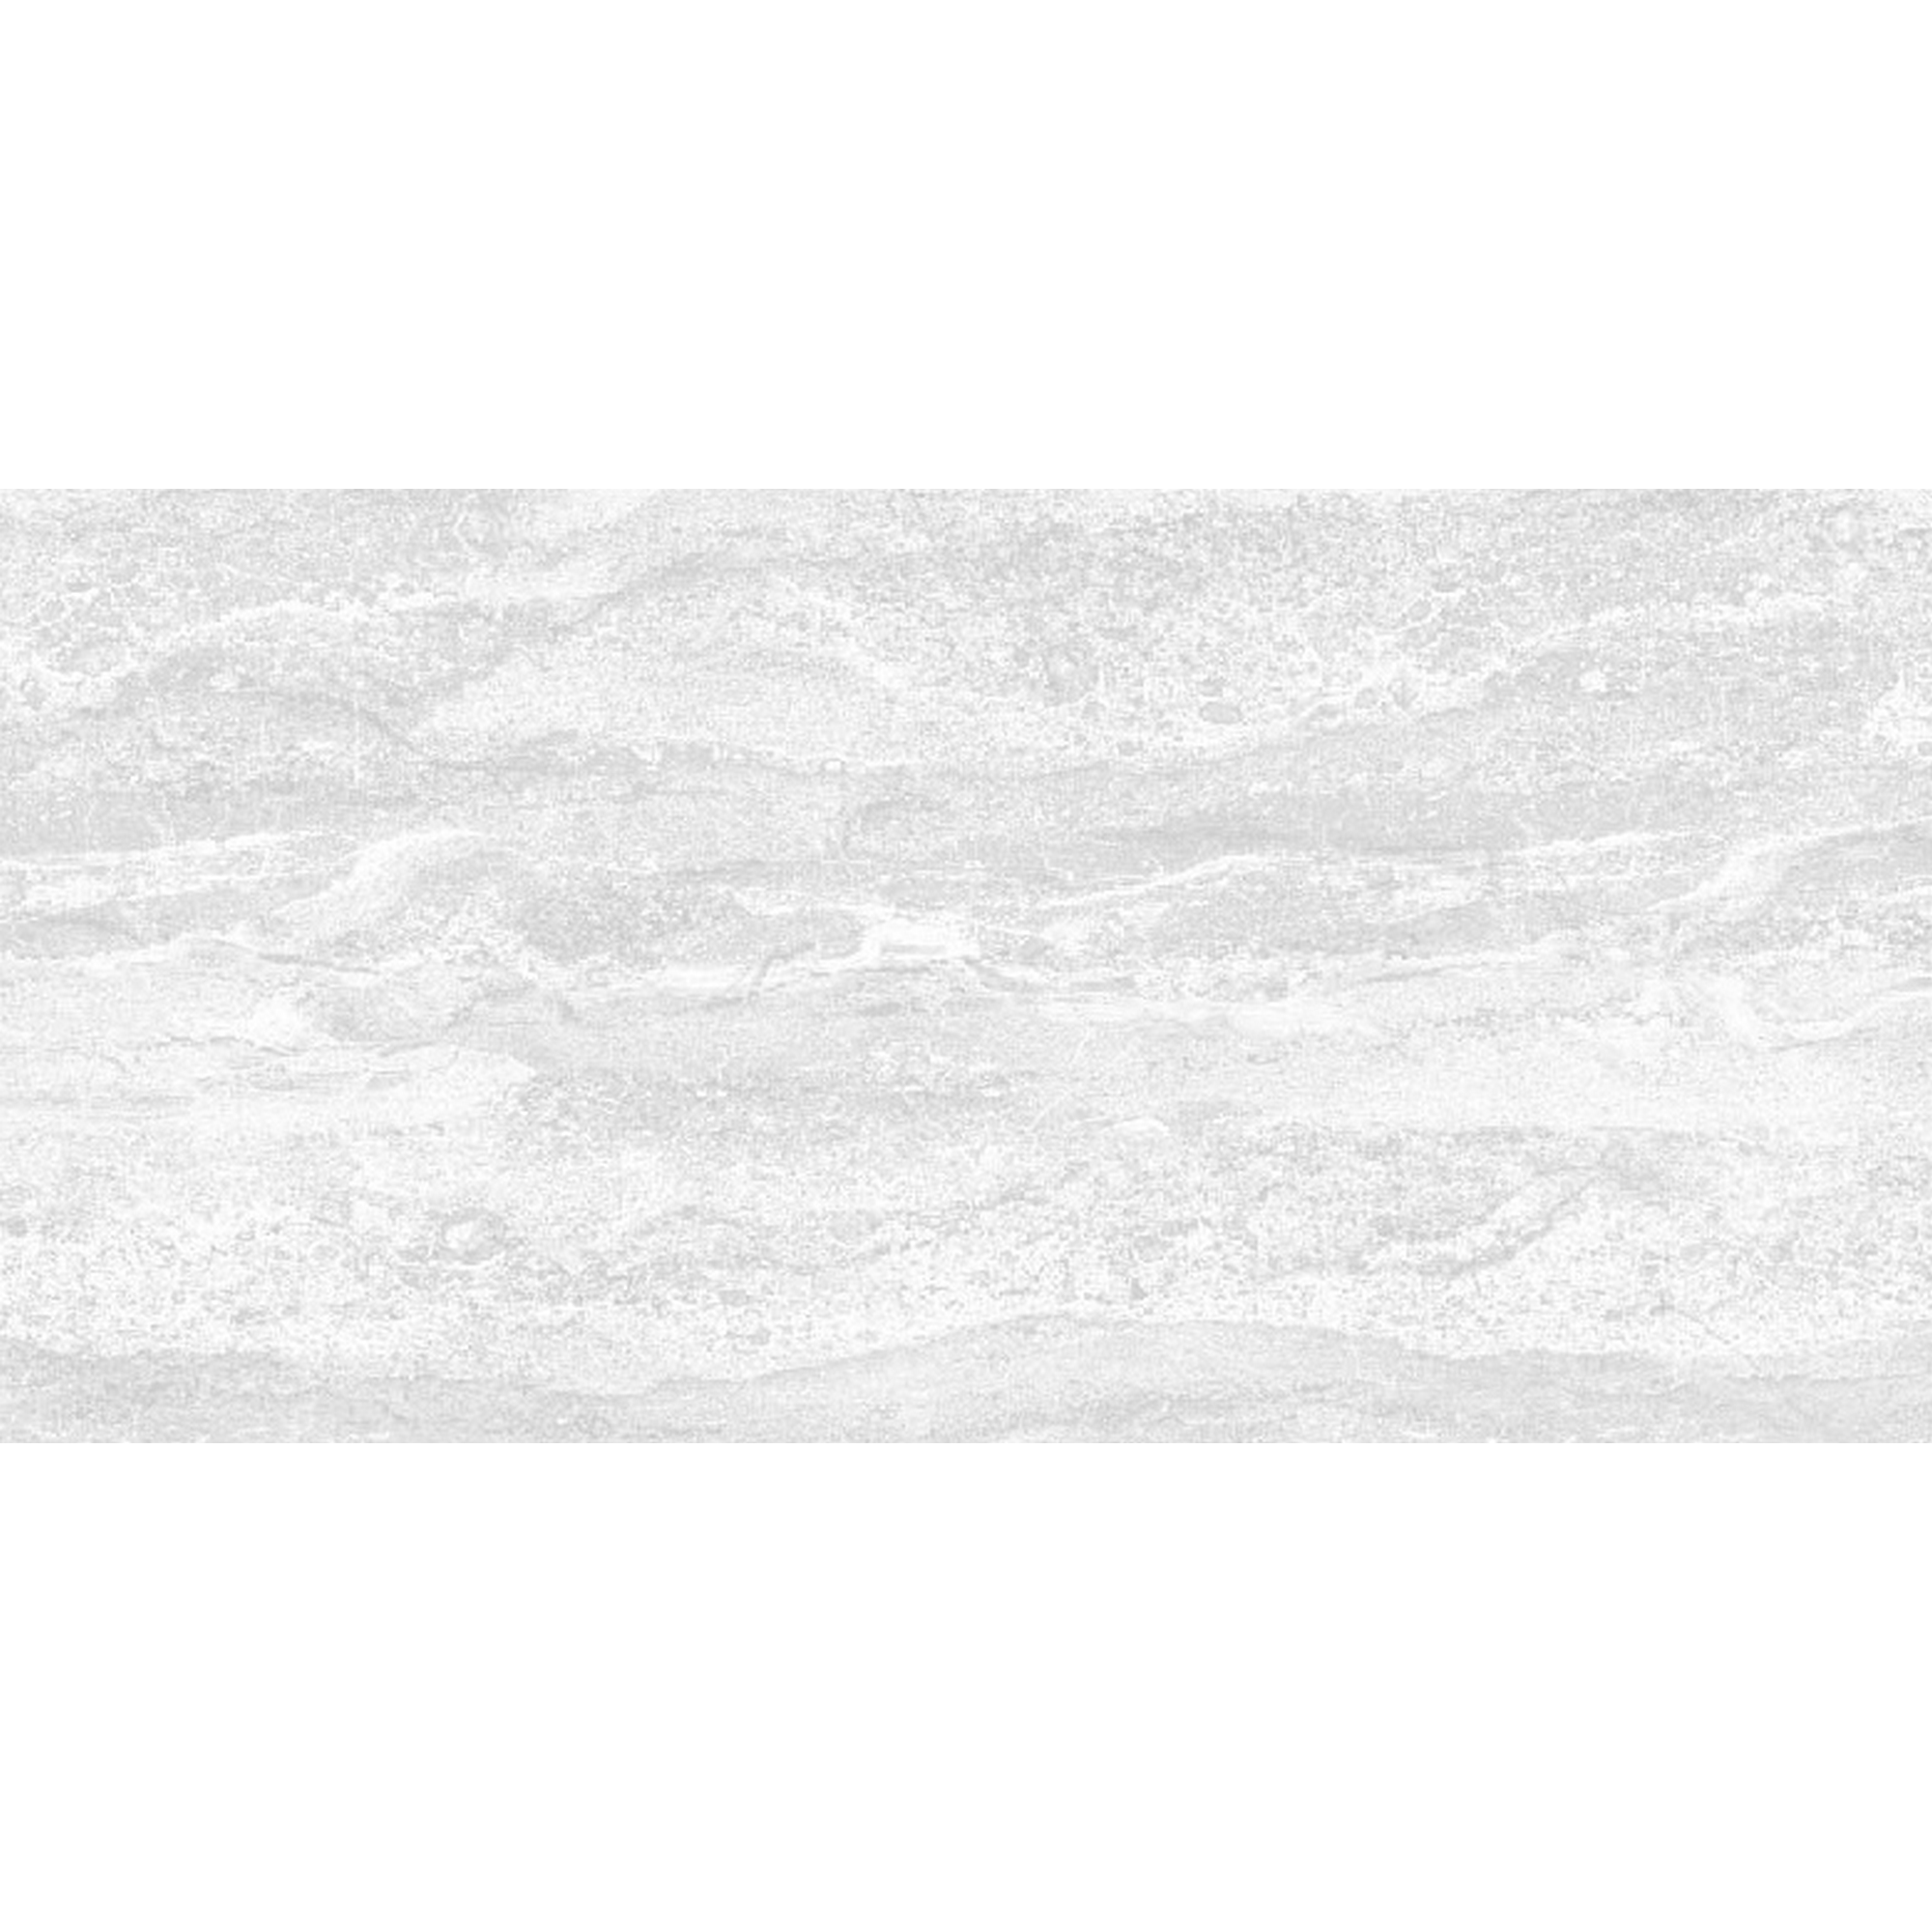 Wandfliese 'Genf' Steingut weiß matt, strukturiert 30 x 60 cm + product picture